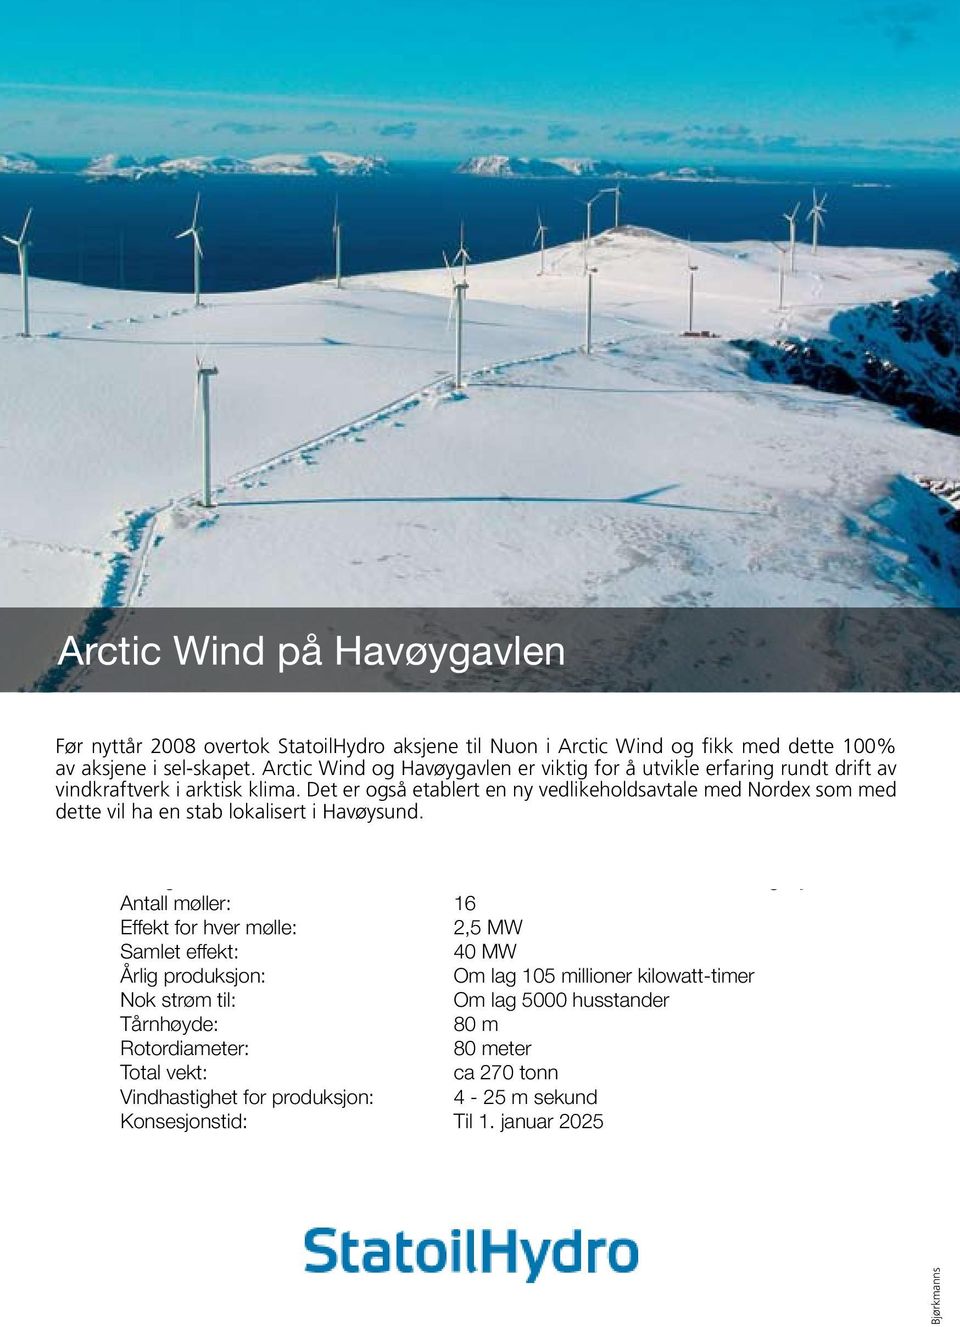 Det på er også 2,5 etablert MW en ny vedlikeholdsavtale med Nordex som med dette Samlet vil effekt: ha en stab lokalisert i Havøysund.